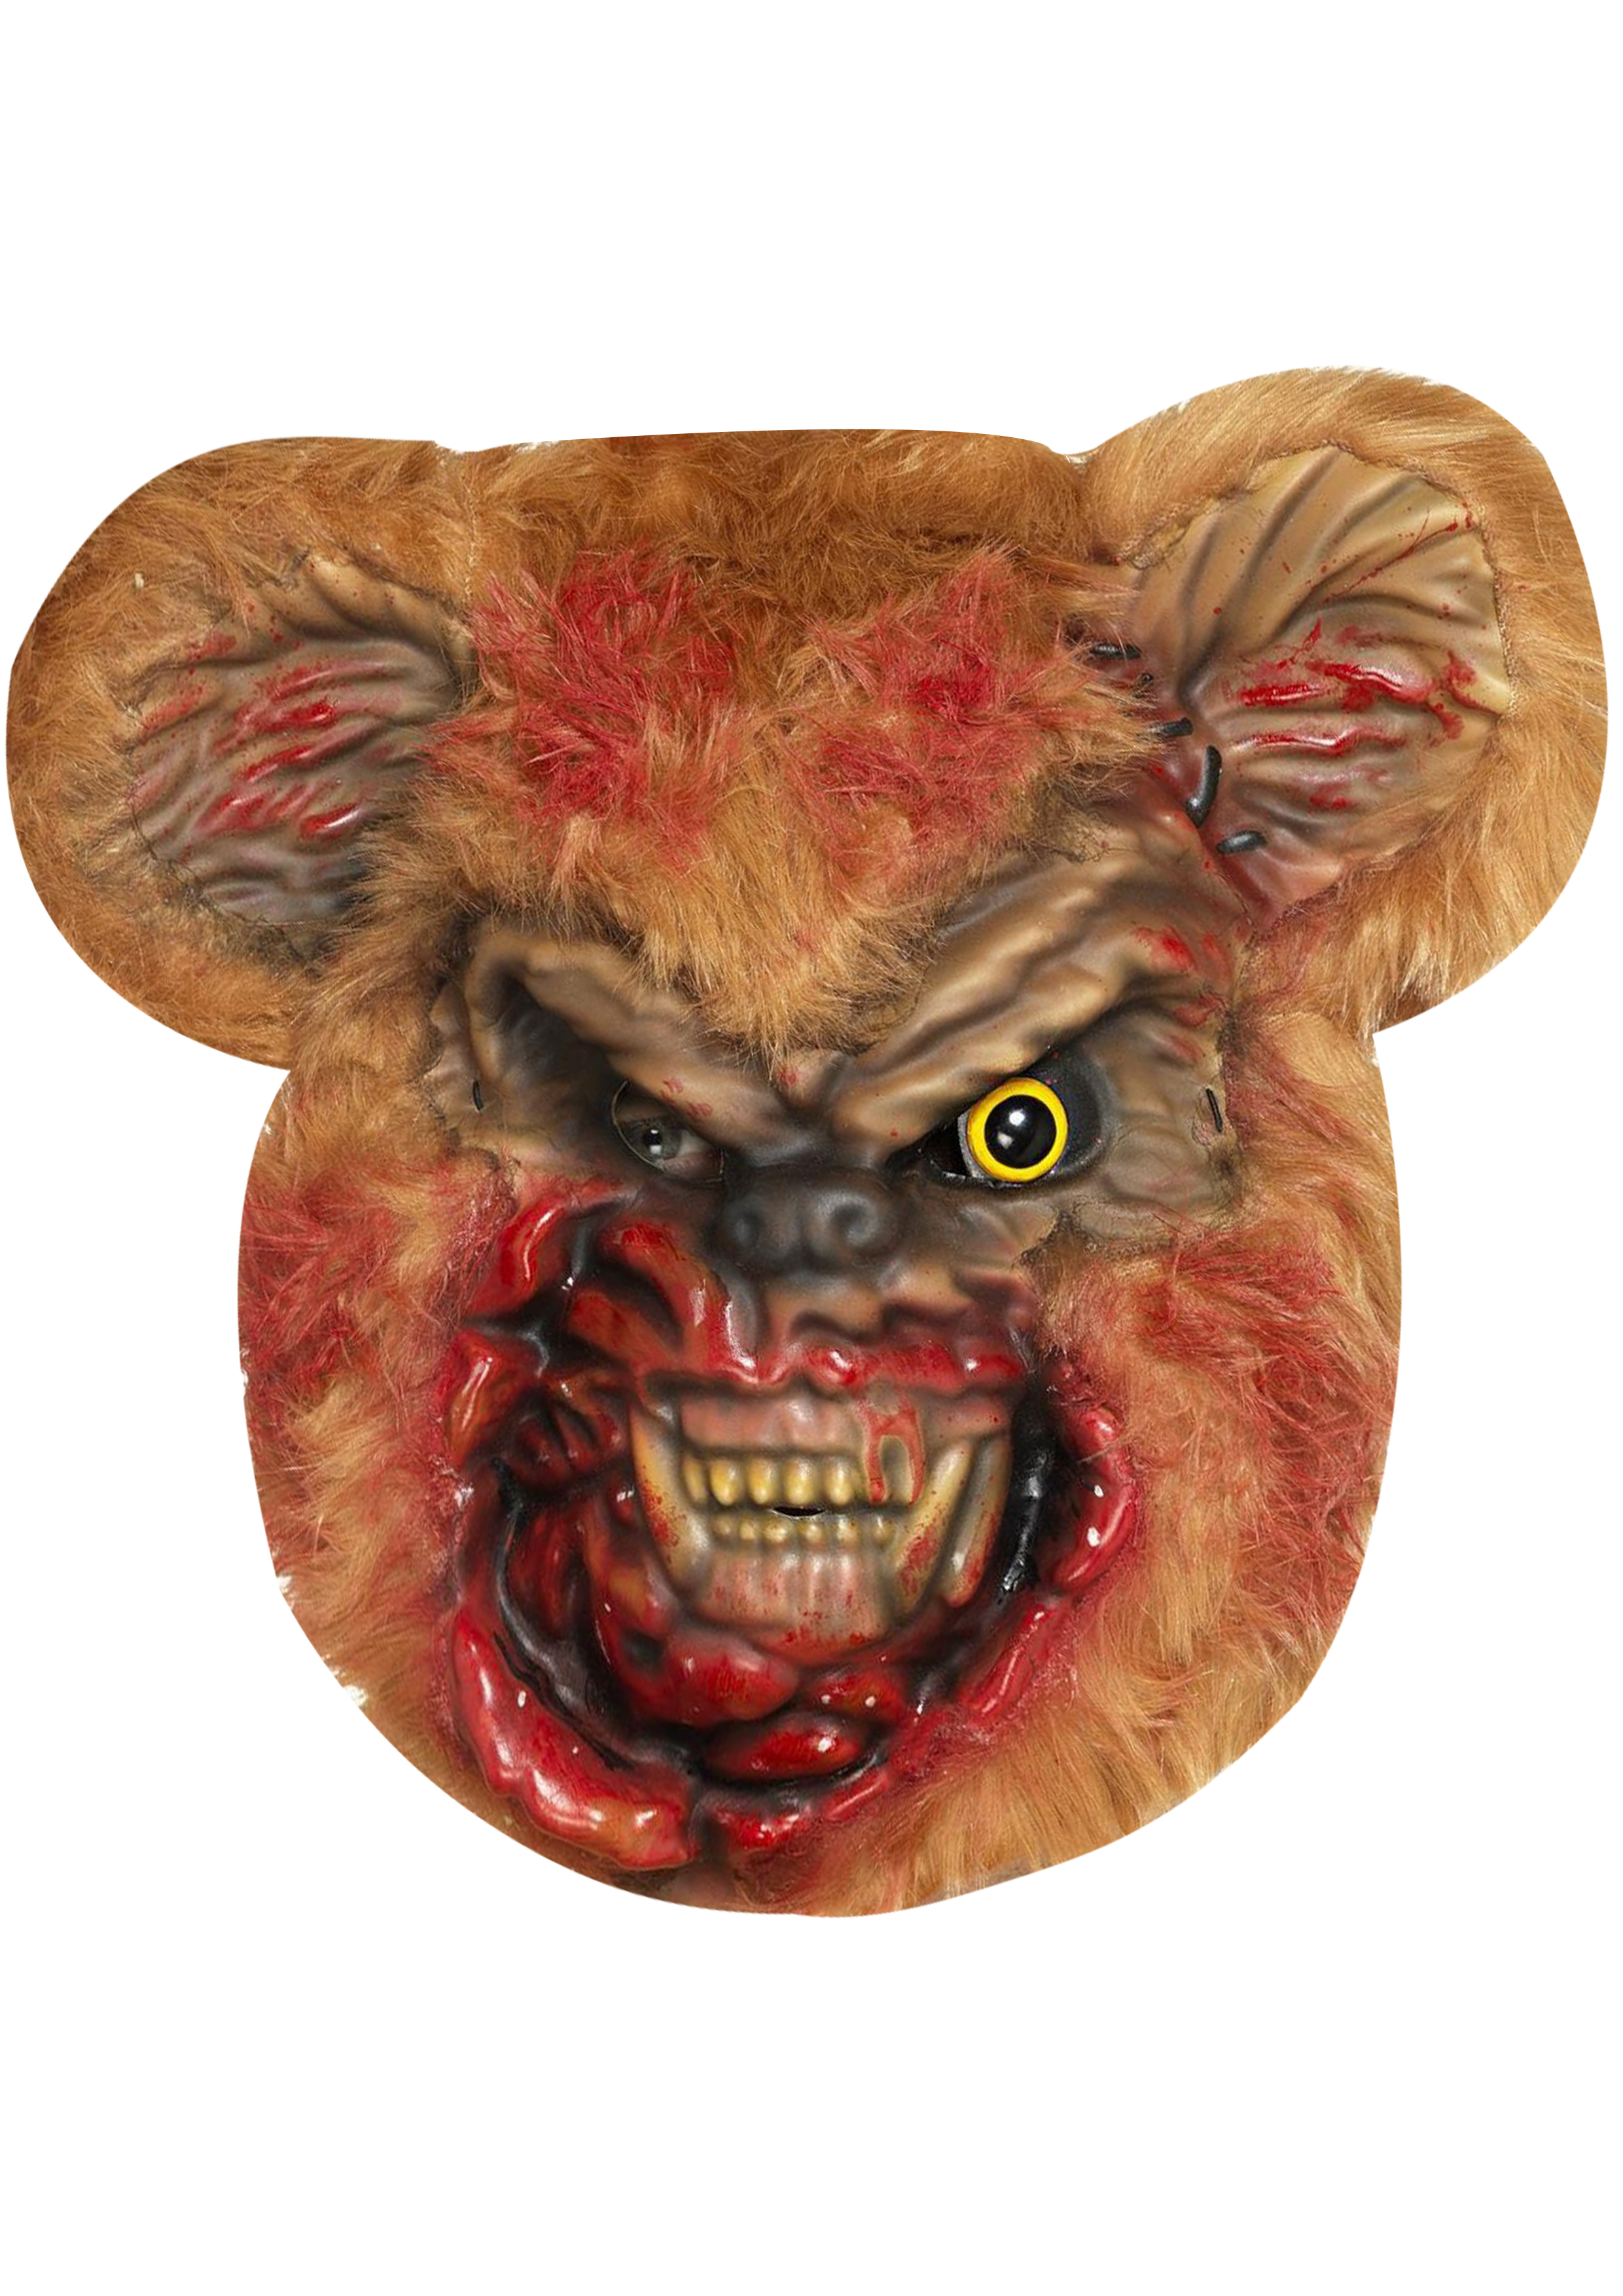 Zombie Teddy - Cardboard Mask